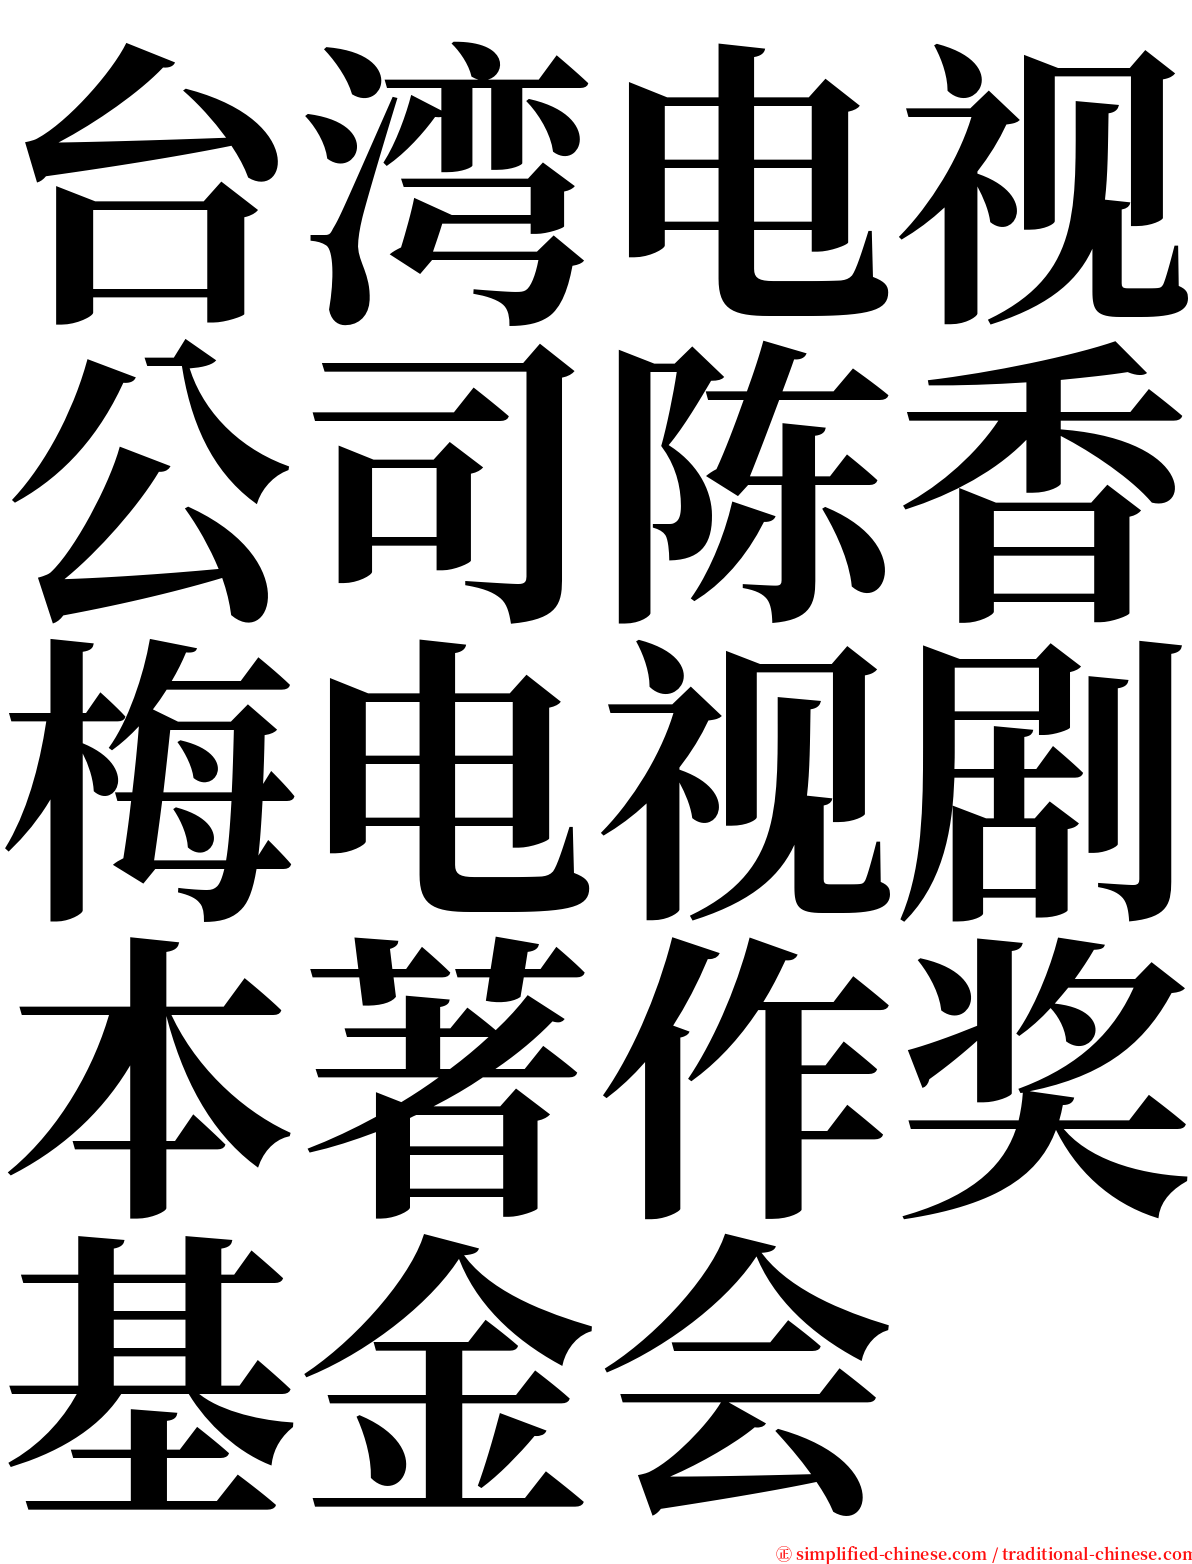 台湾电视公司陈香梅电视剧本著作奖基金会 serif font